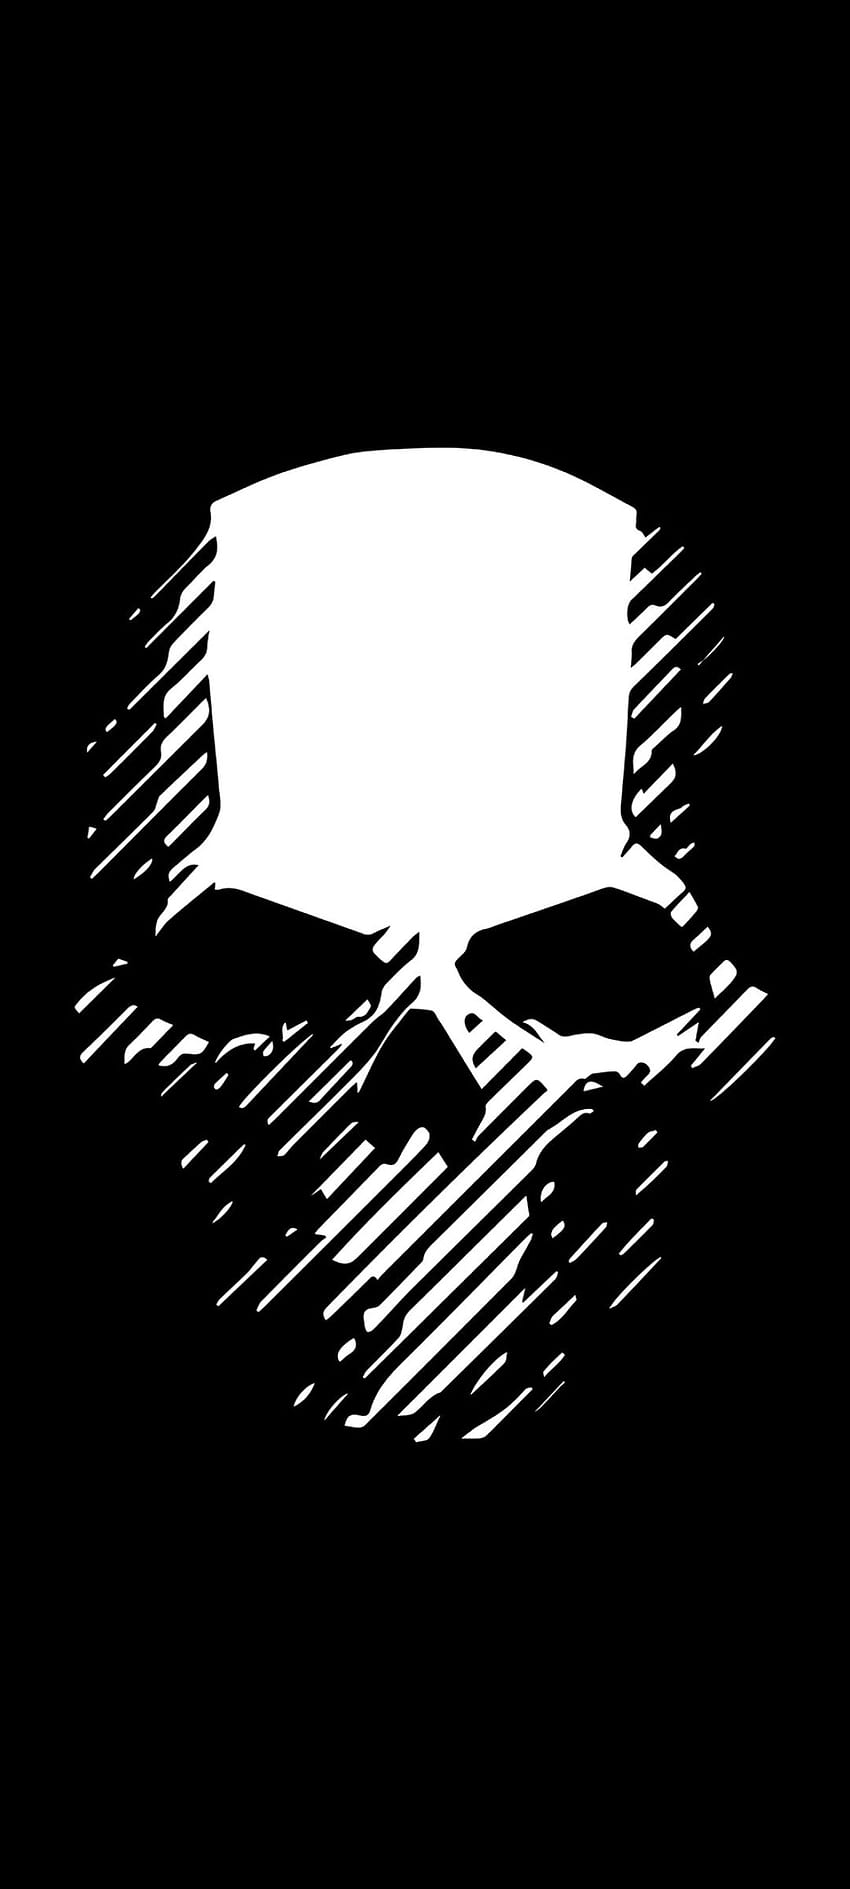 1080x2400 Ghost Recon Skull 1080x2400 Resolución, juegos y s, cráneo lleno de amoled fondo de pantalla del teléfono